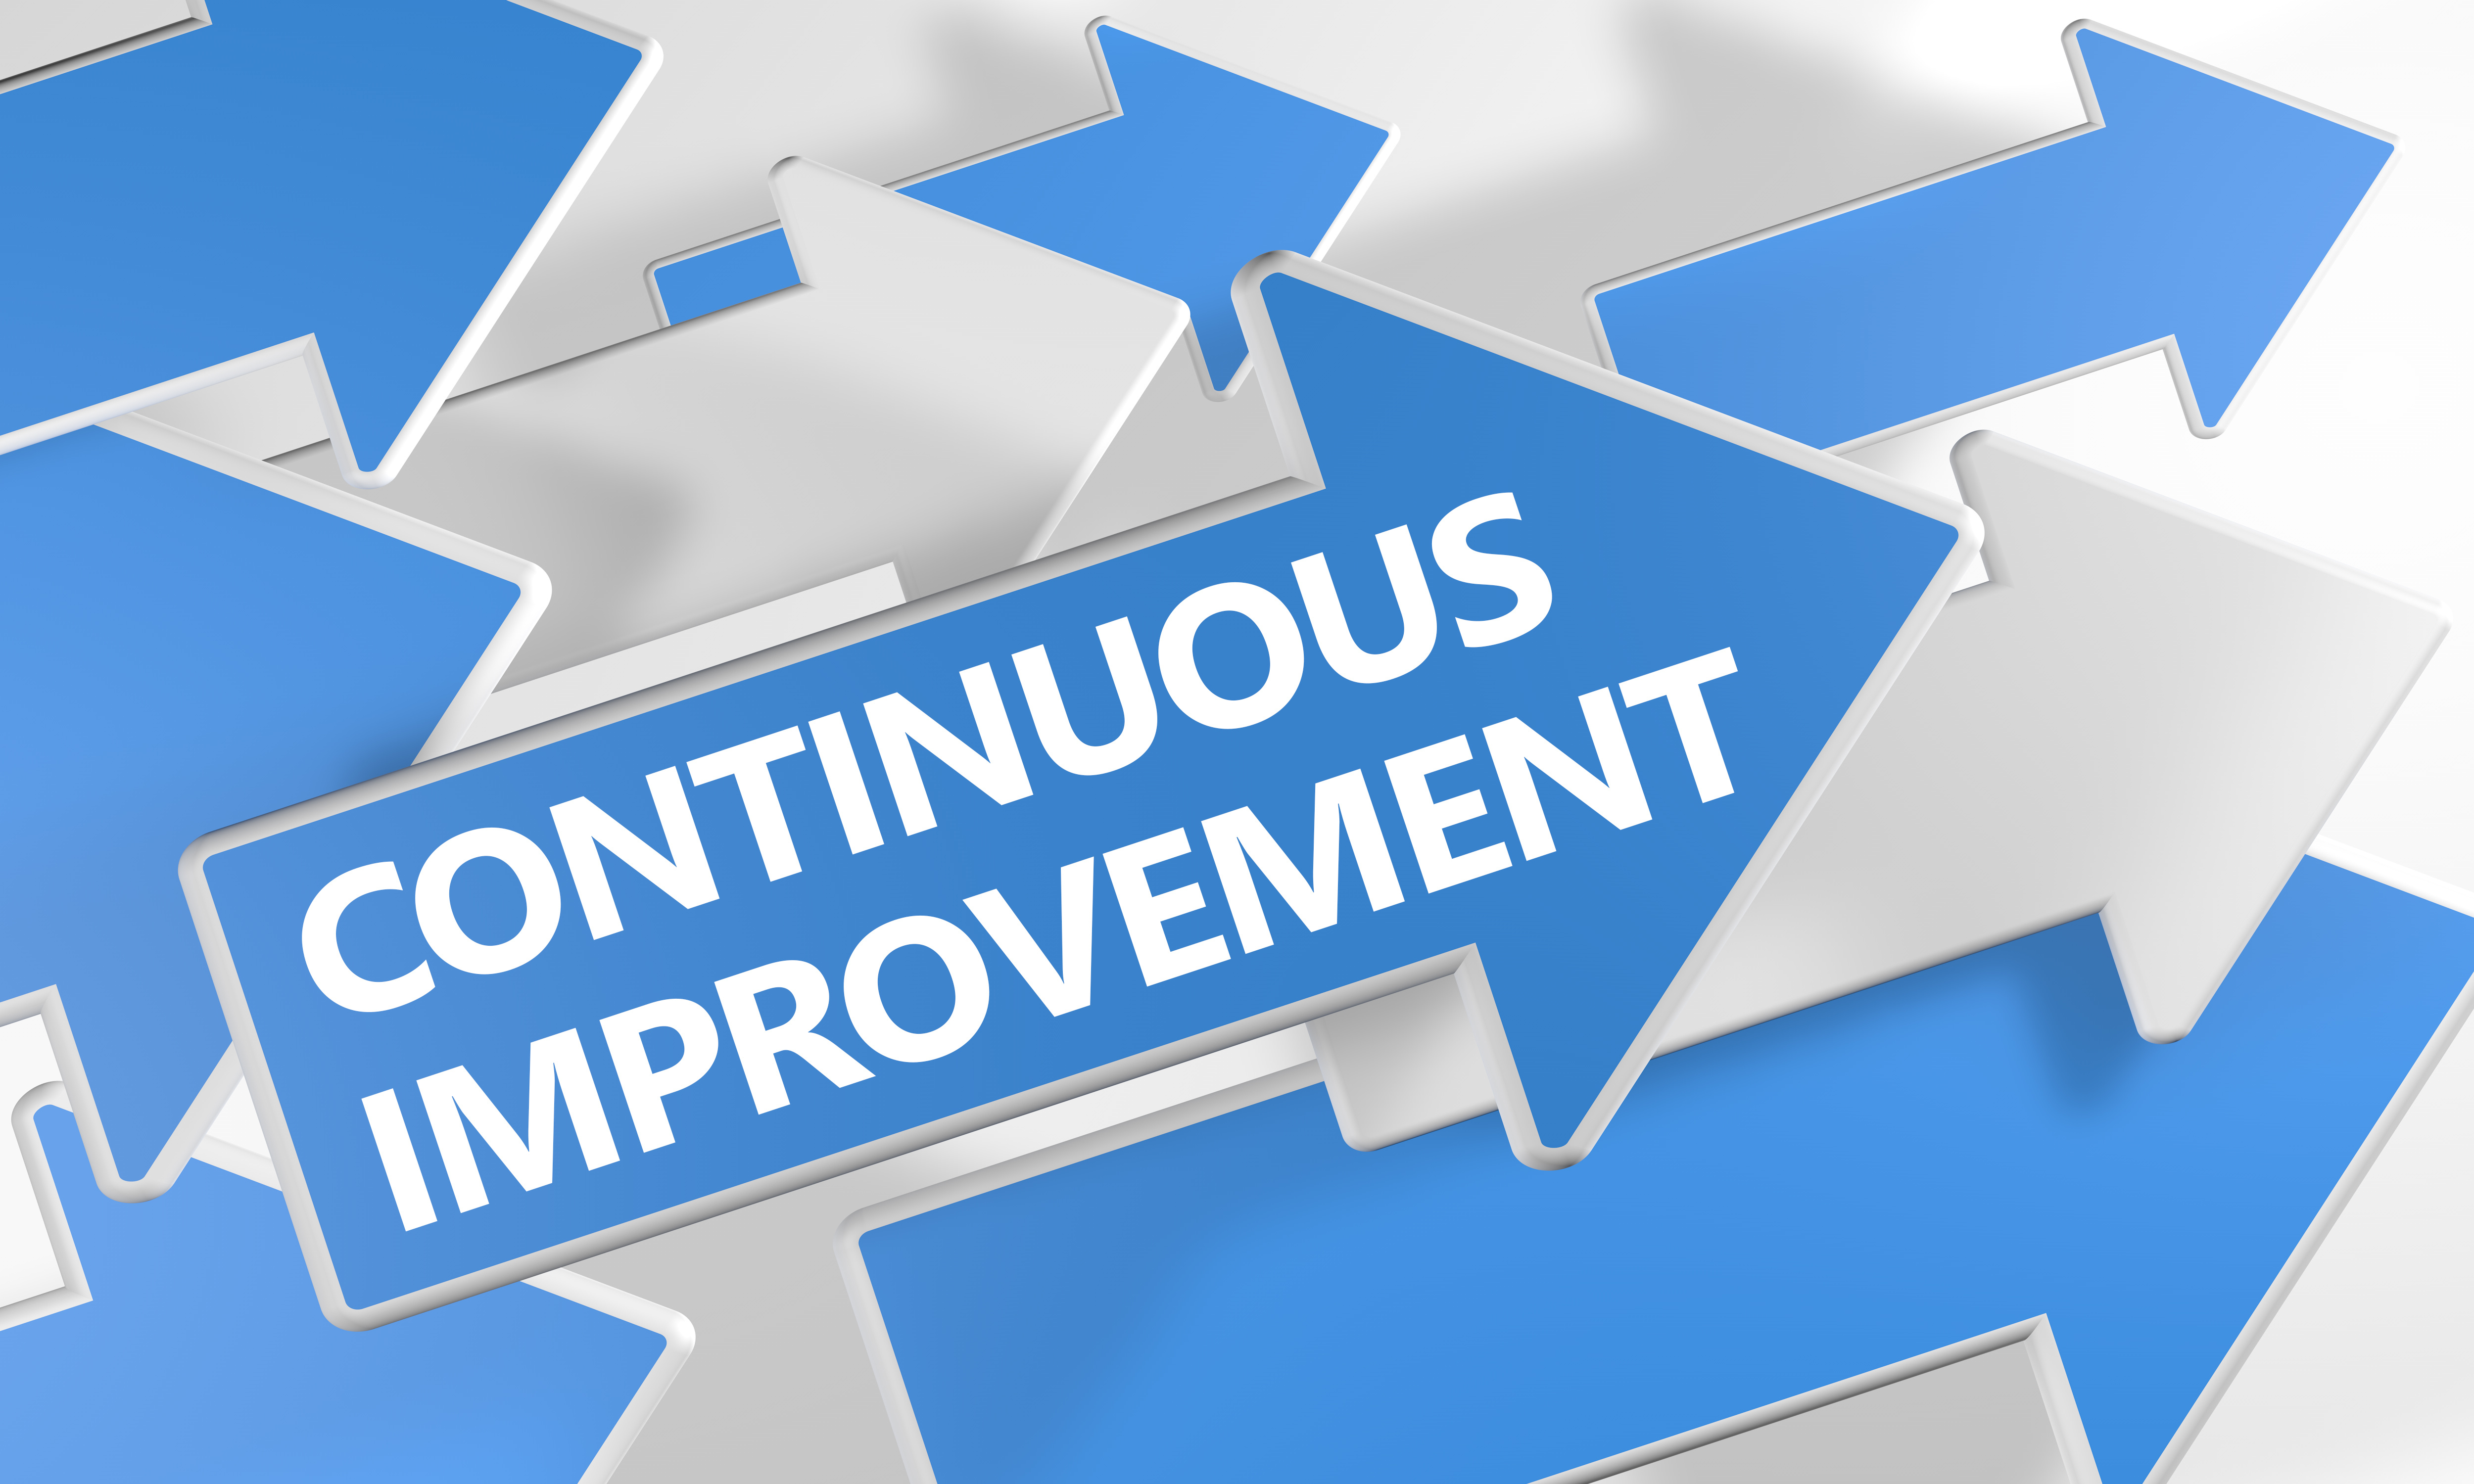 Continuous Improvement Survey Leading Edge Group